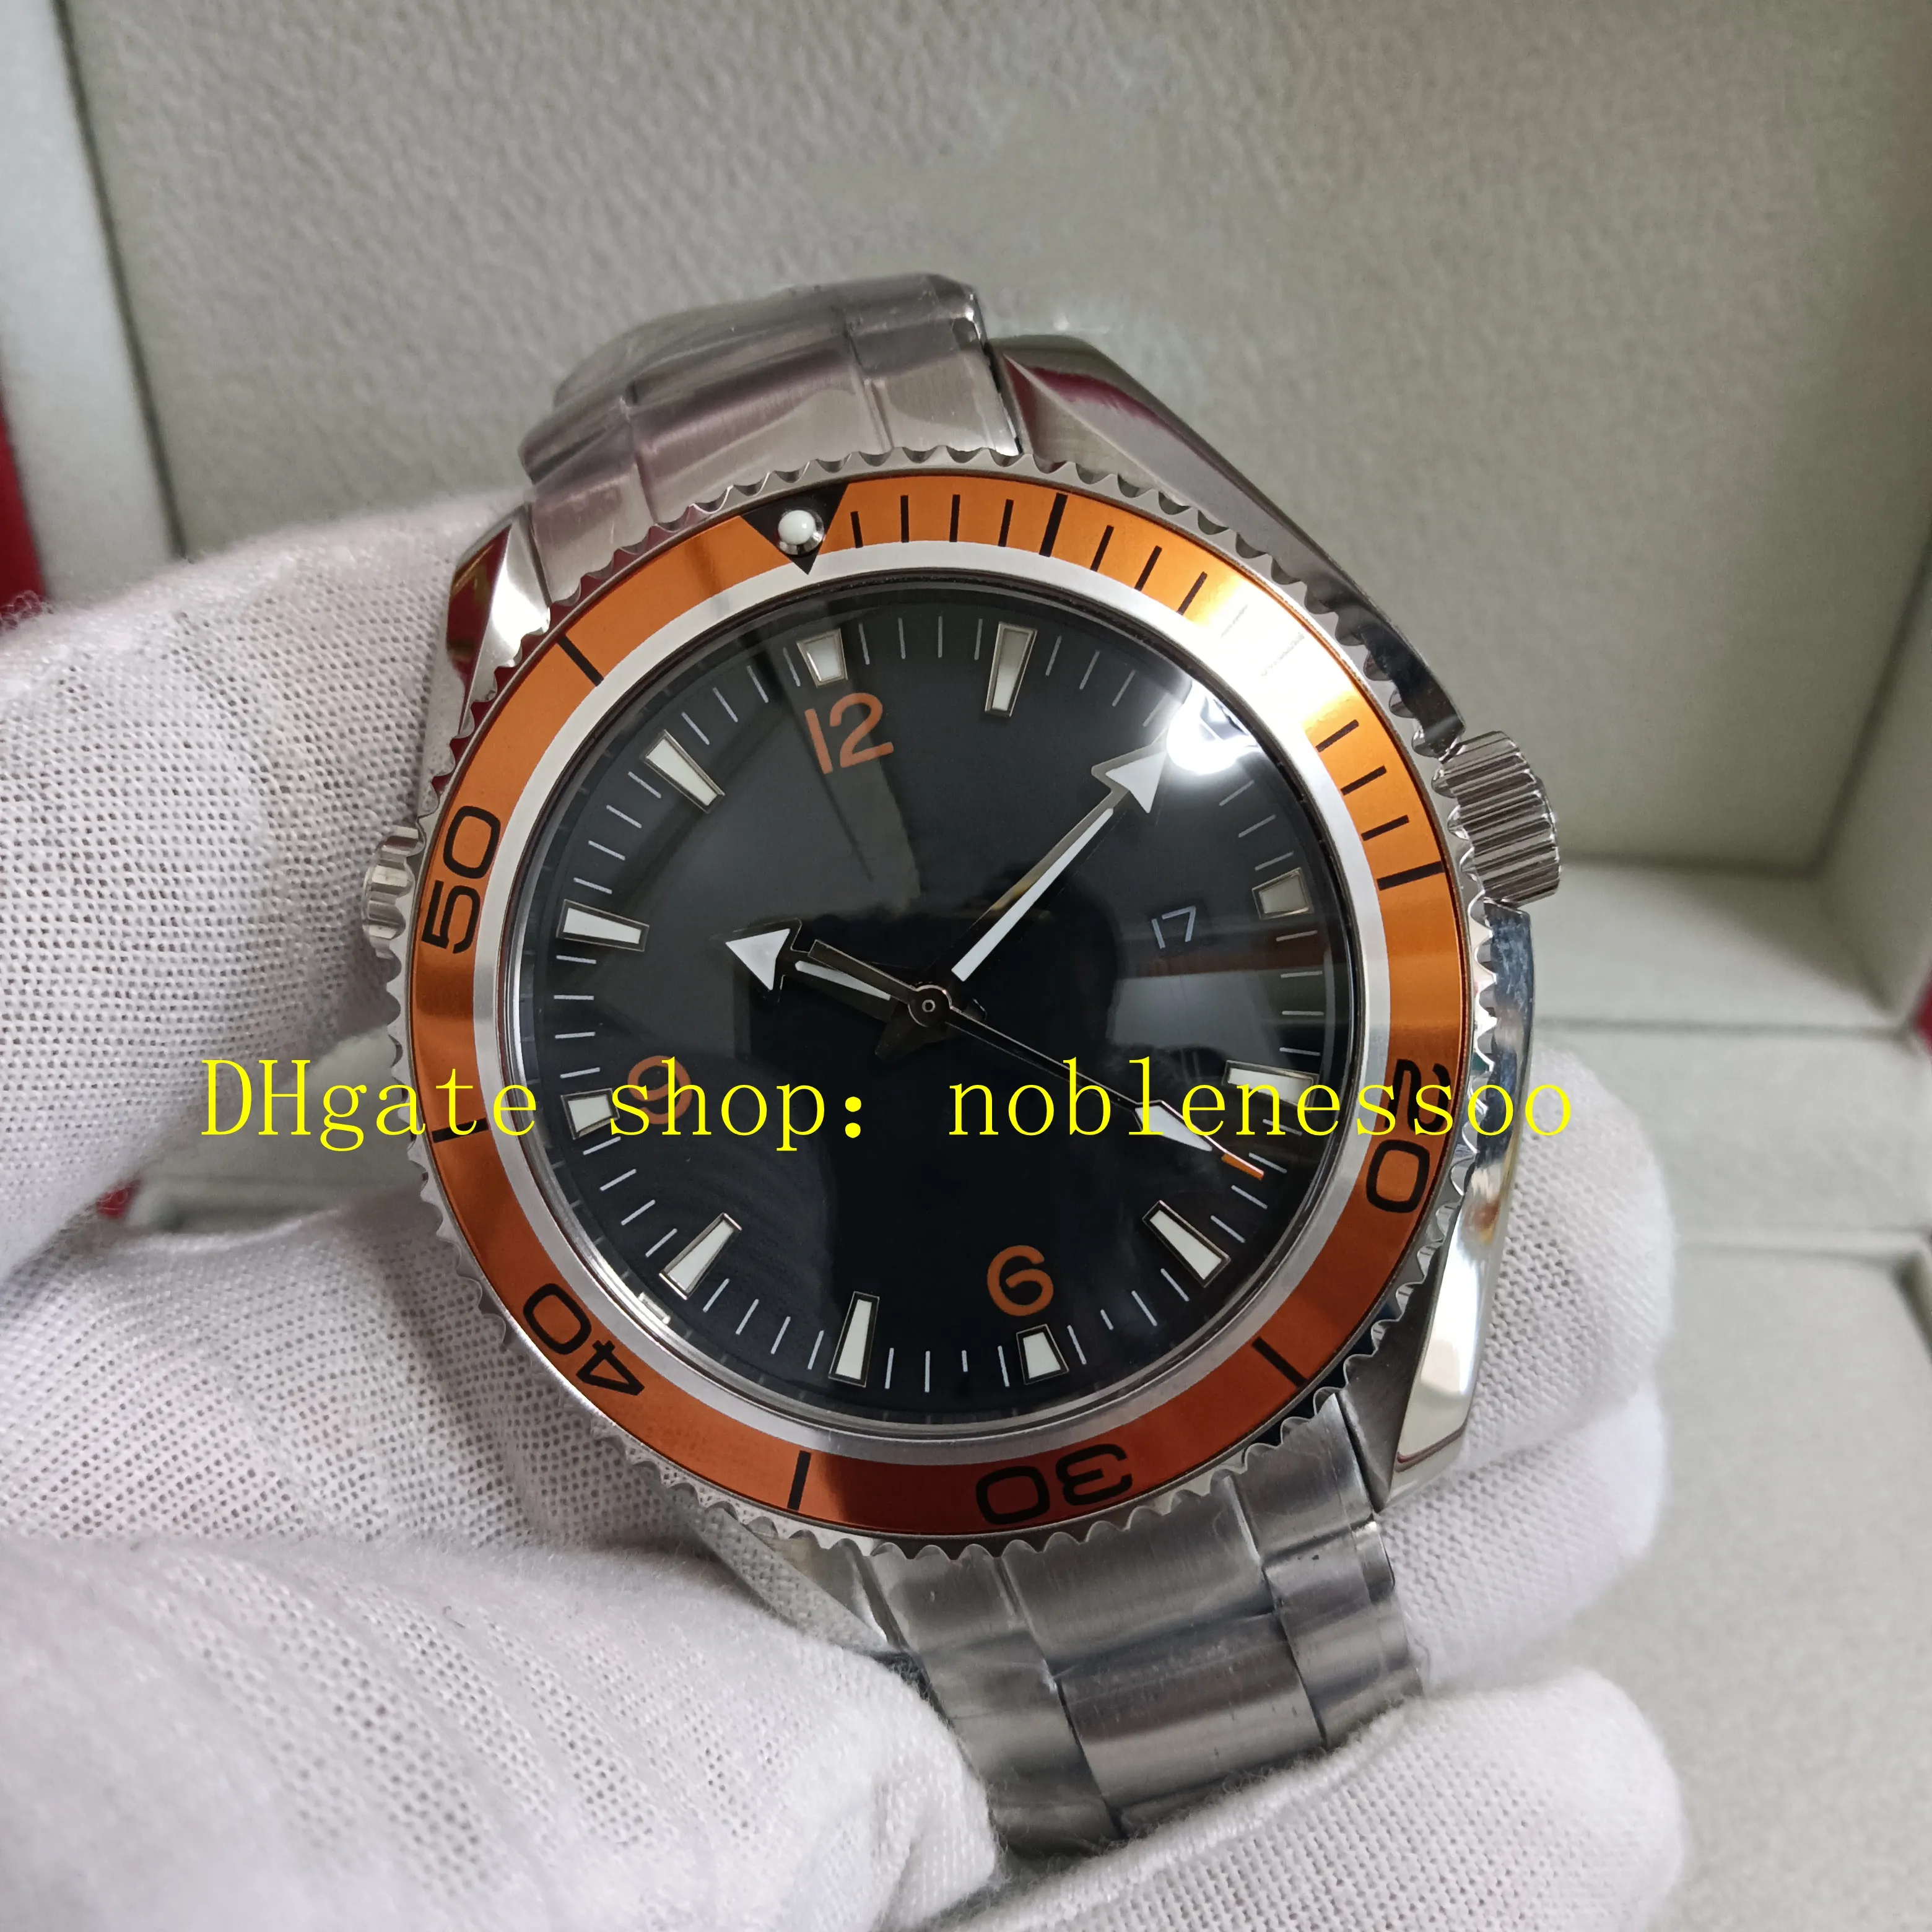 オリジナルのボックスウォッチ付き5色メンズオレンジベゼルブラックダイヤル42mm 600mスポーツステンレススチールブレスレットプロフェッショナル007アジア自動機械時計